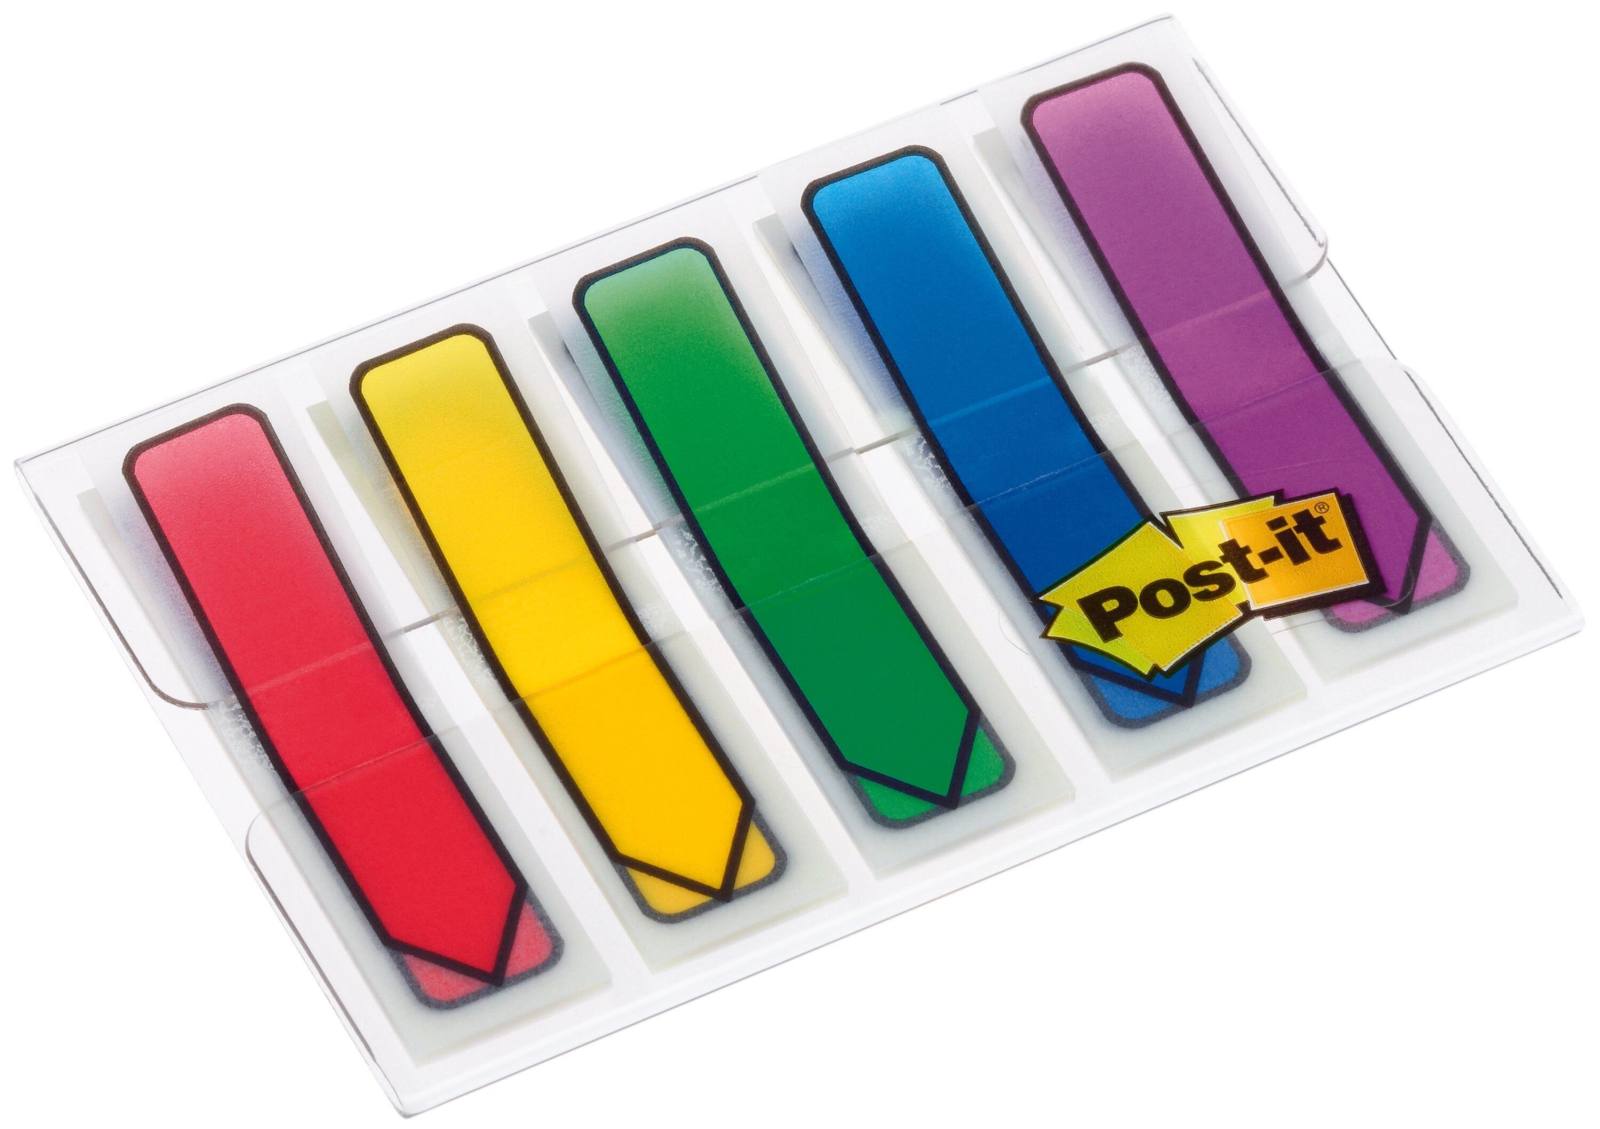 3M Post-it Frecce indice 684ARR1, 11,9 mm x 43,2 mm, blu, giallo, verde, viola, rosso, 5 x 20 strisce adesive